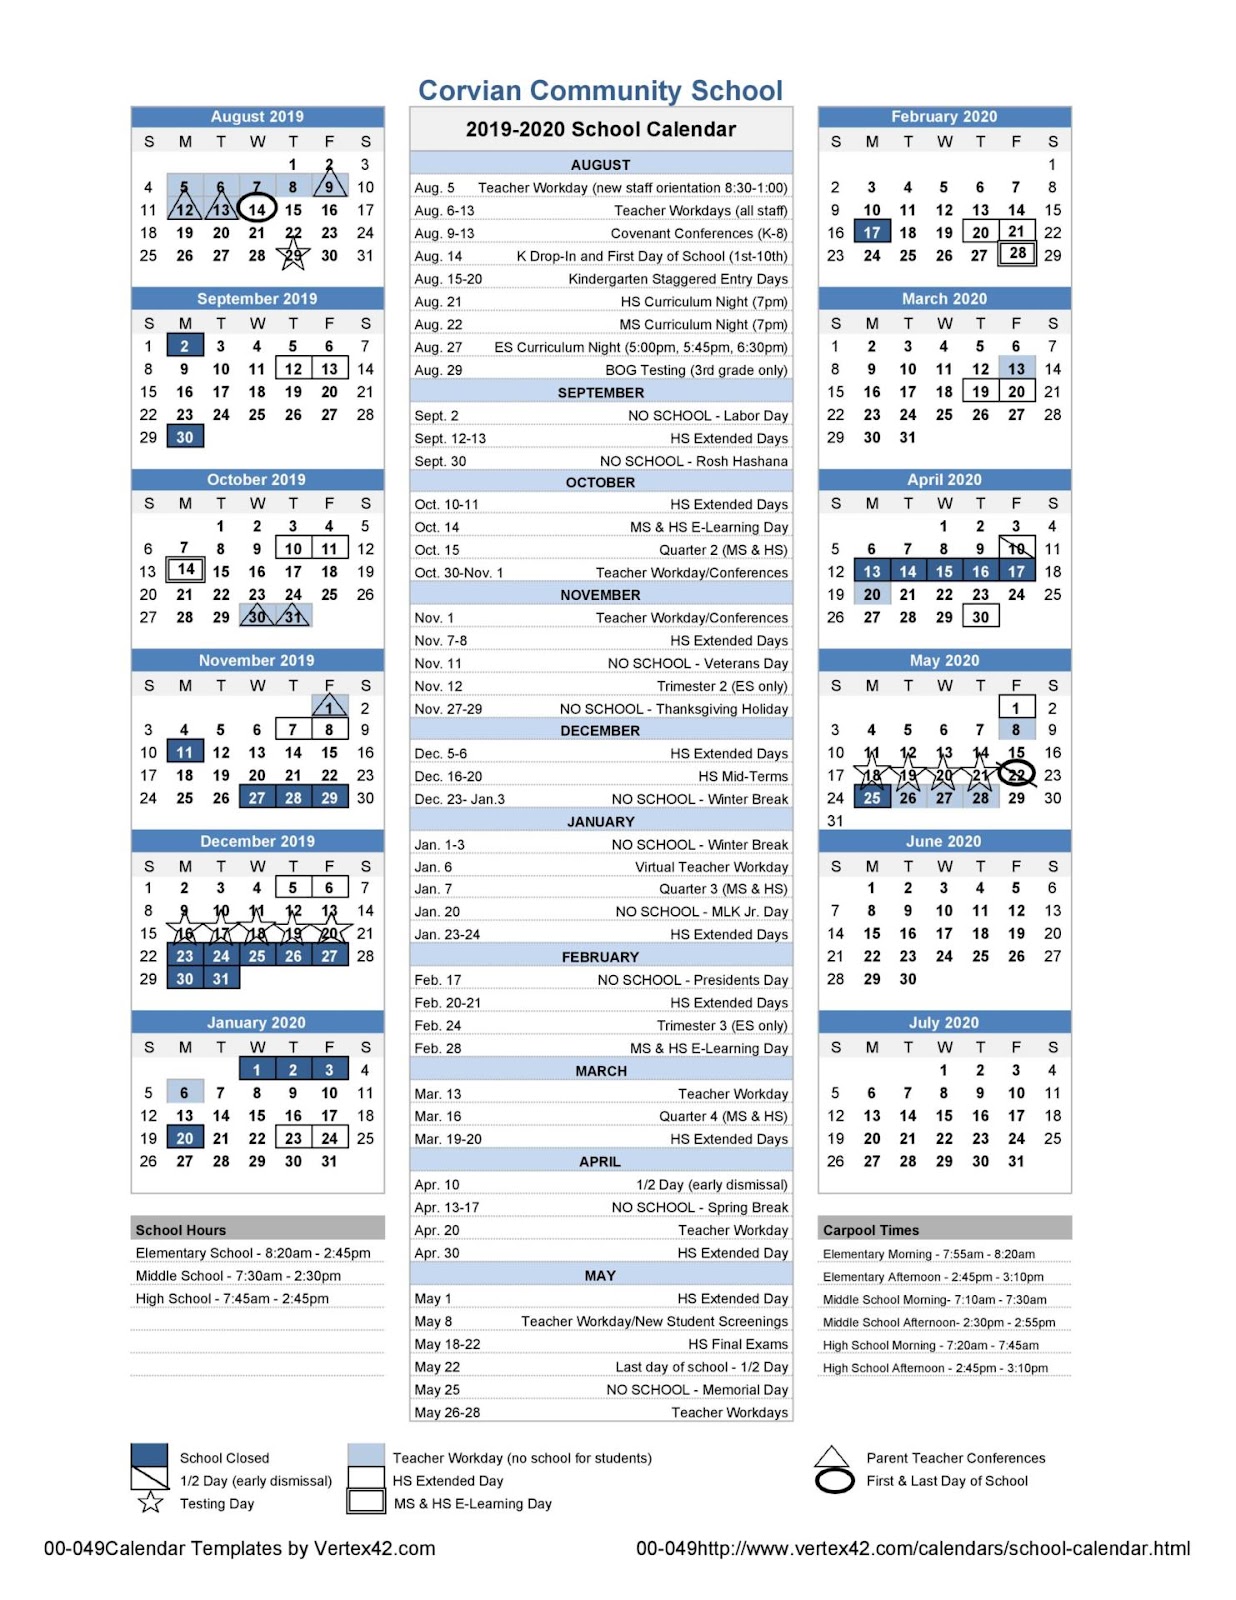 uncc calendar 2019 2021 School Calendar uncc calendar 2019 2021